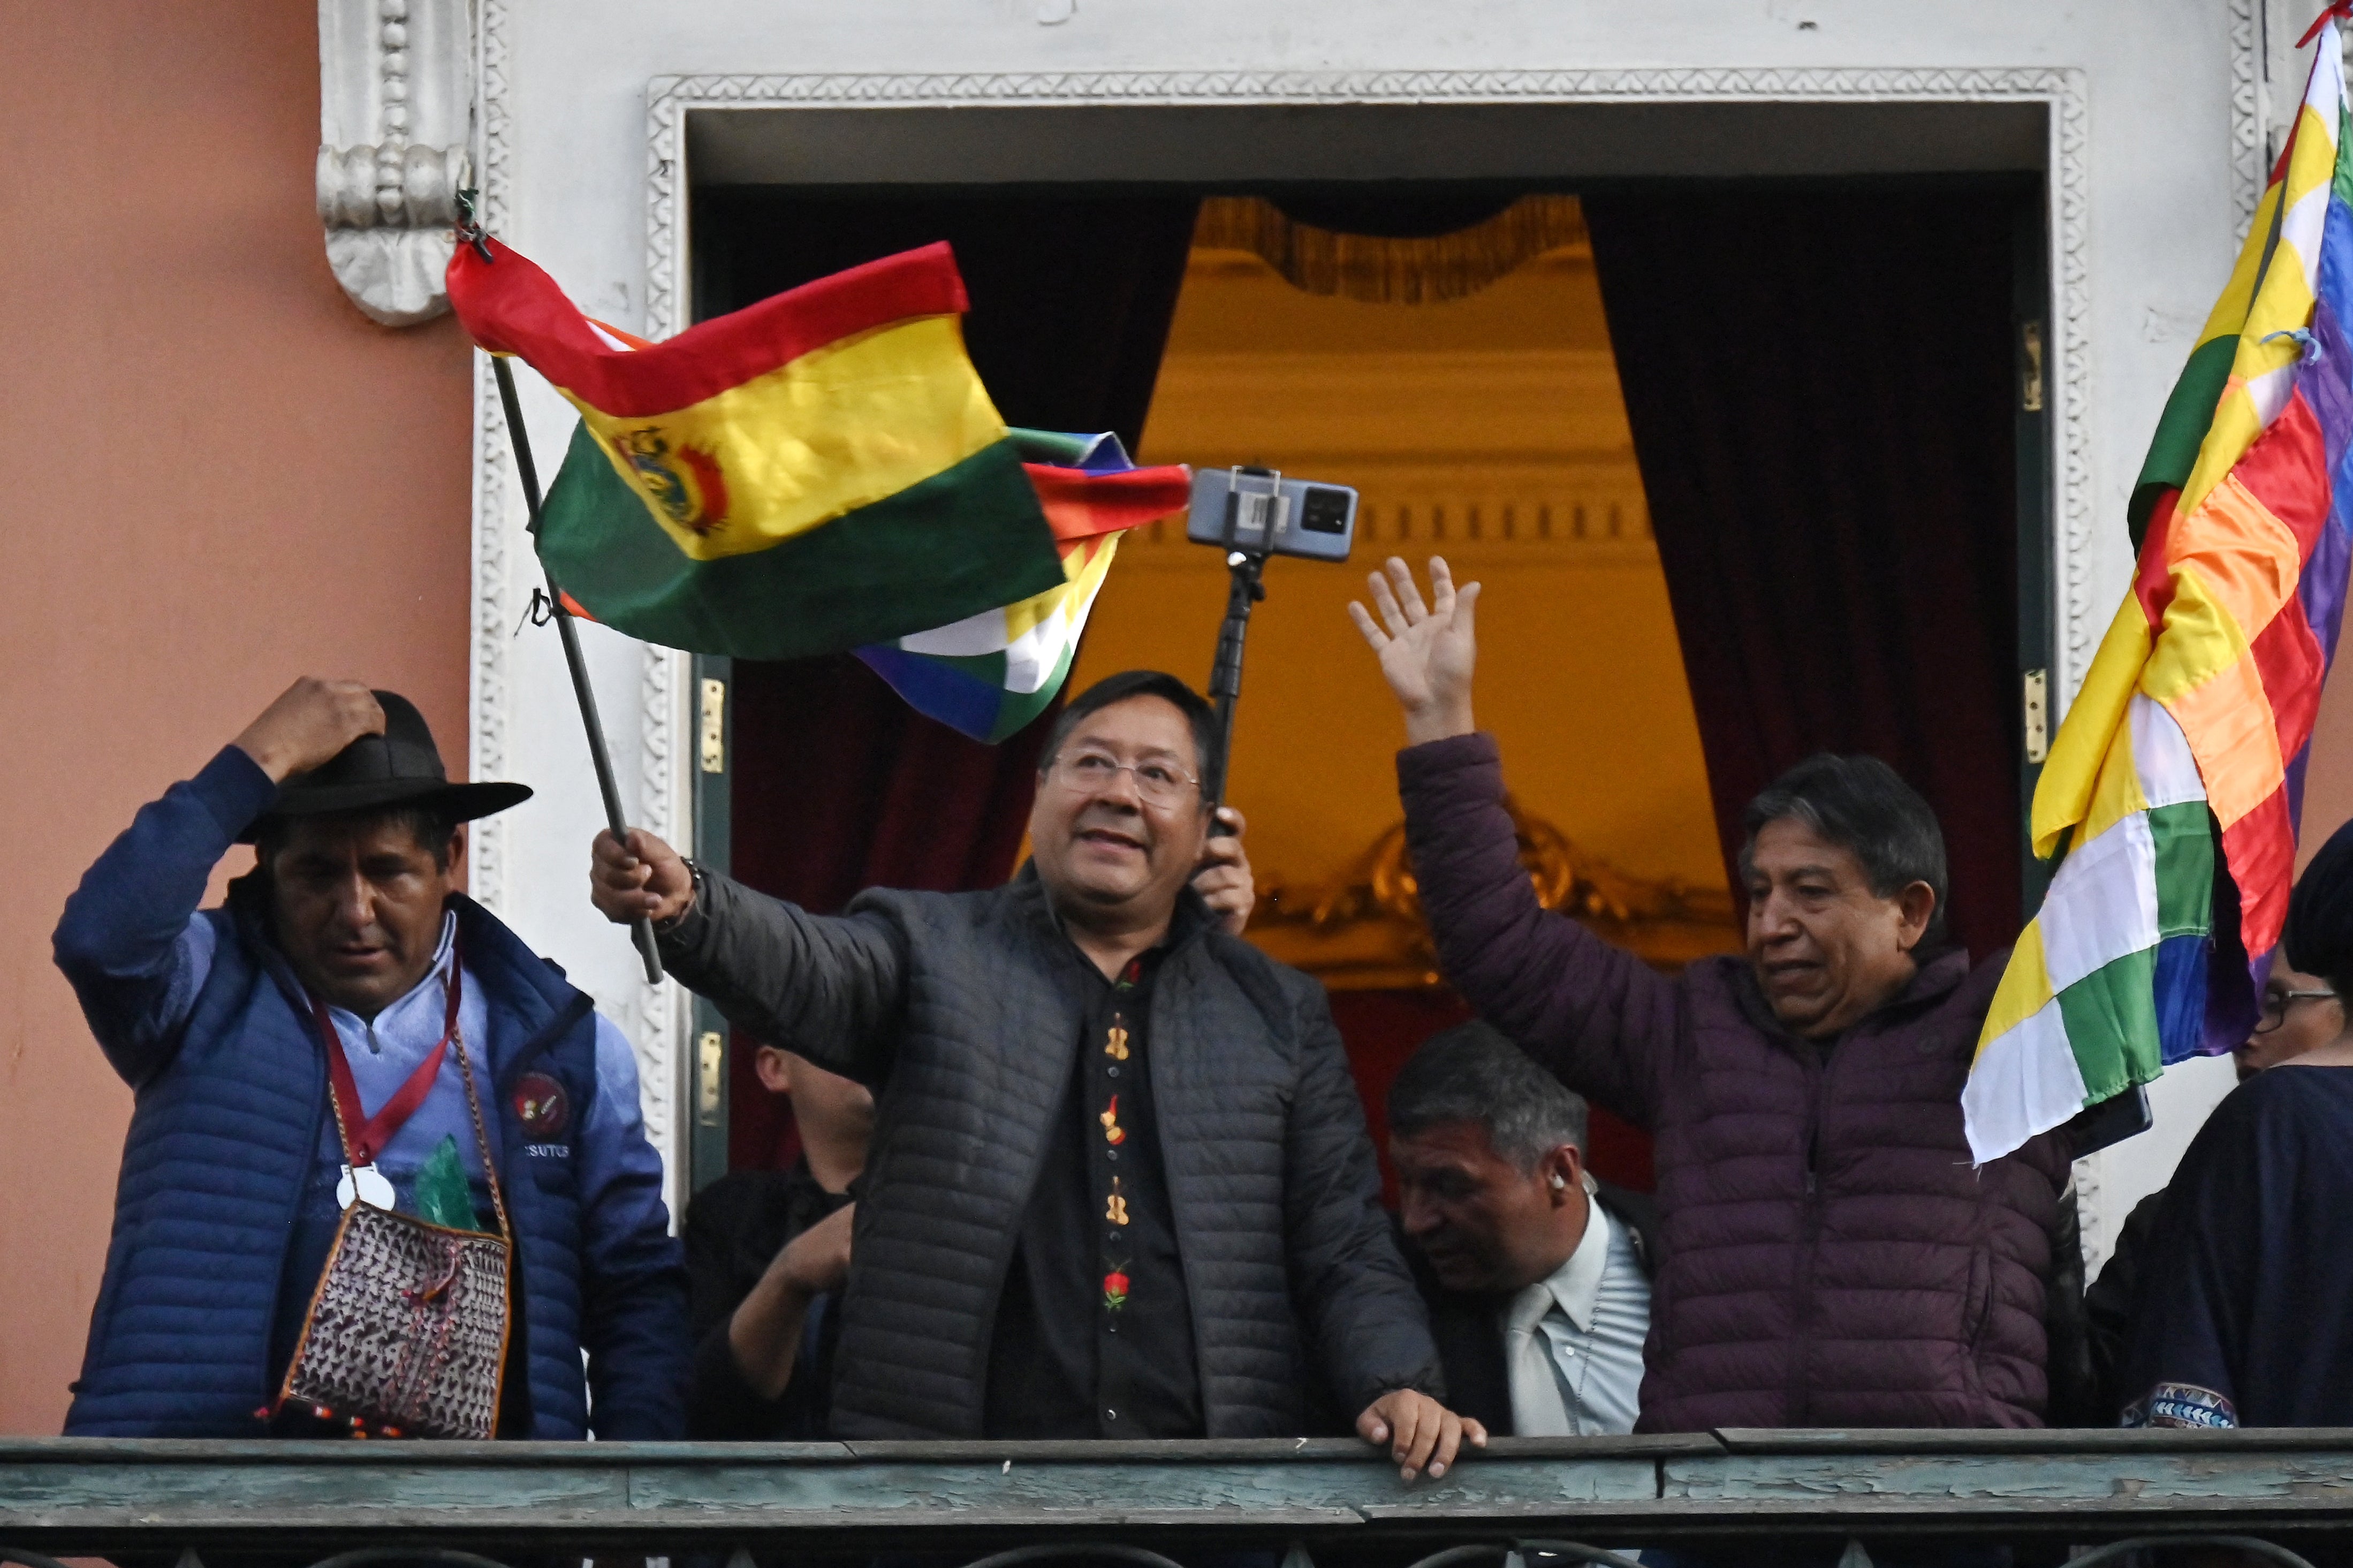 ラパスの政府宮殿のバルコニーでボリビアの国旗を振るボリビアのルイス・アルセ大統領